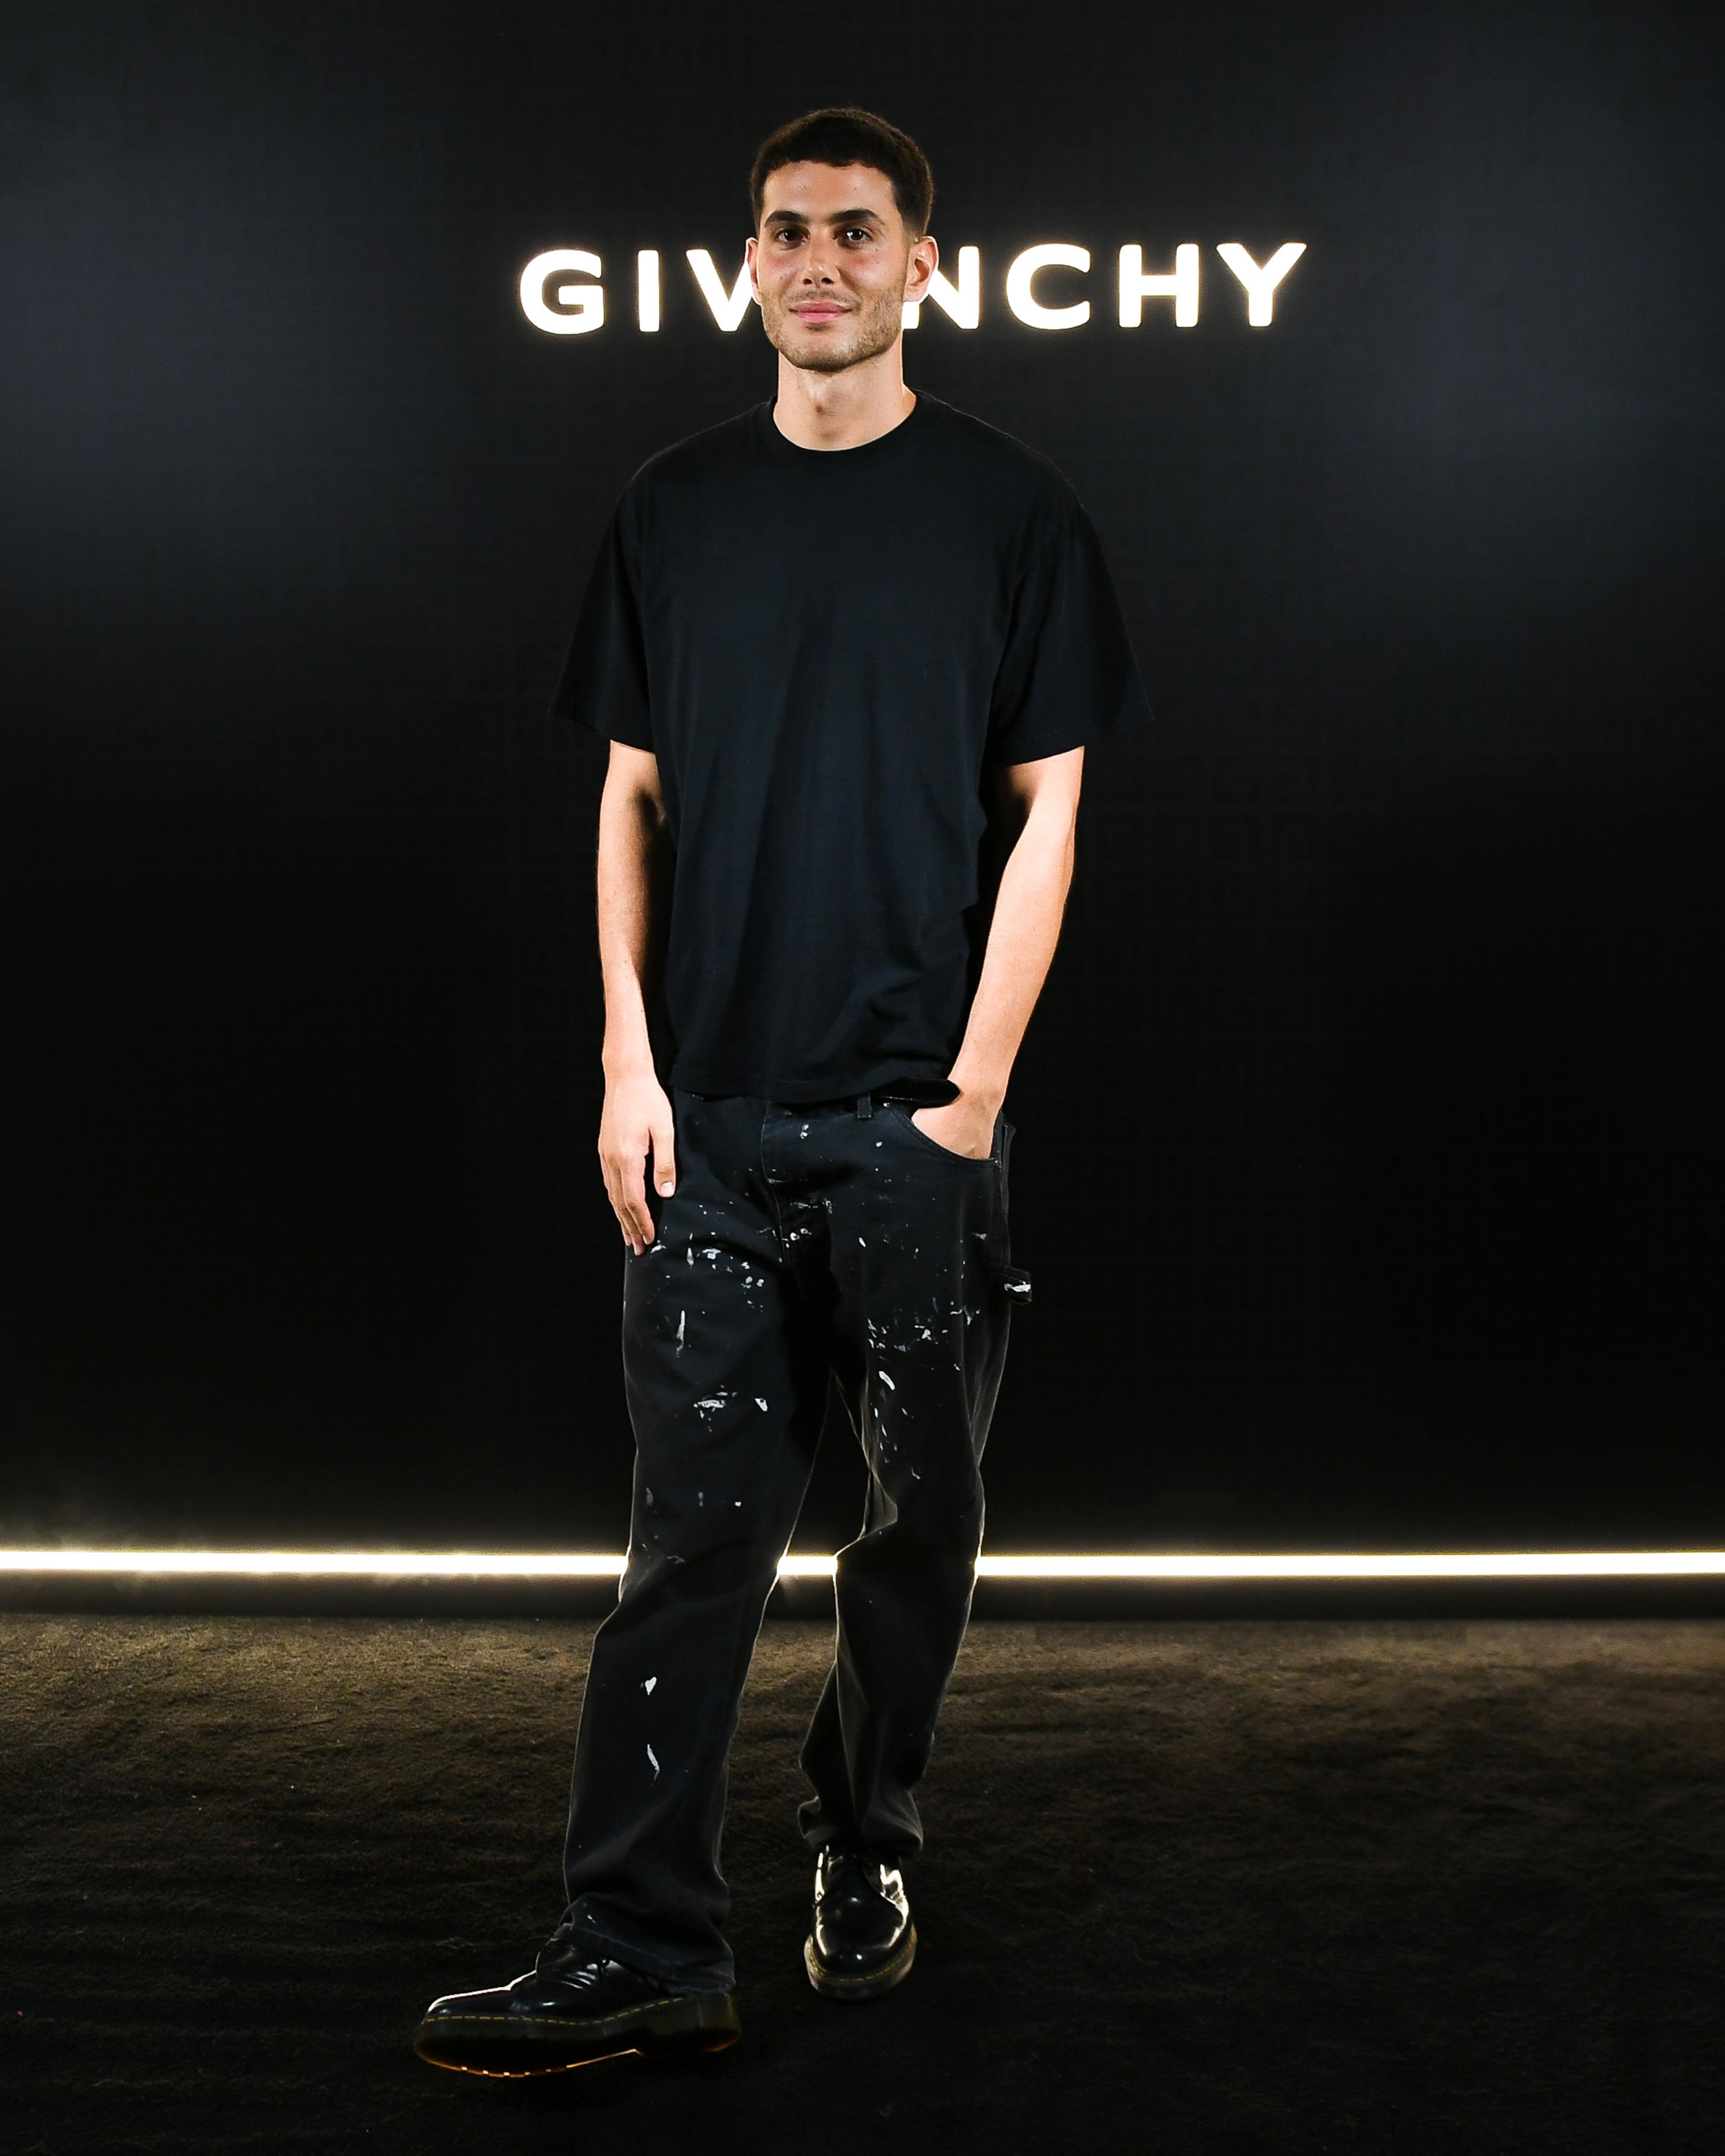 Fai Khadra in Givenchy.jpg